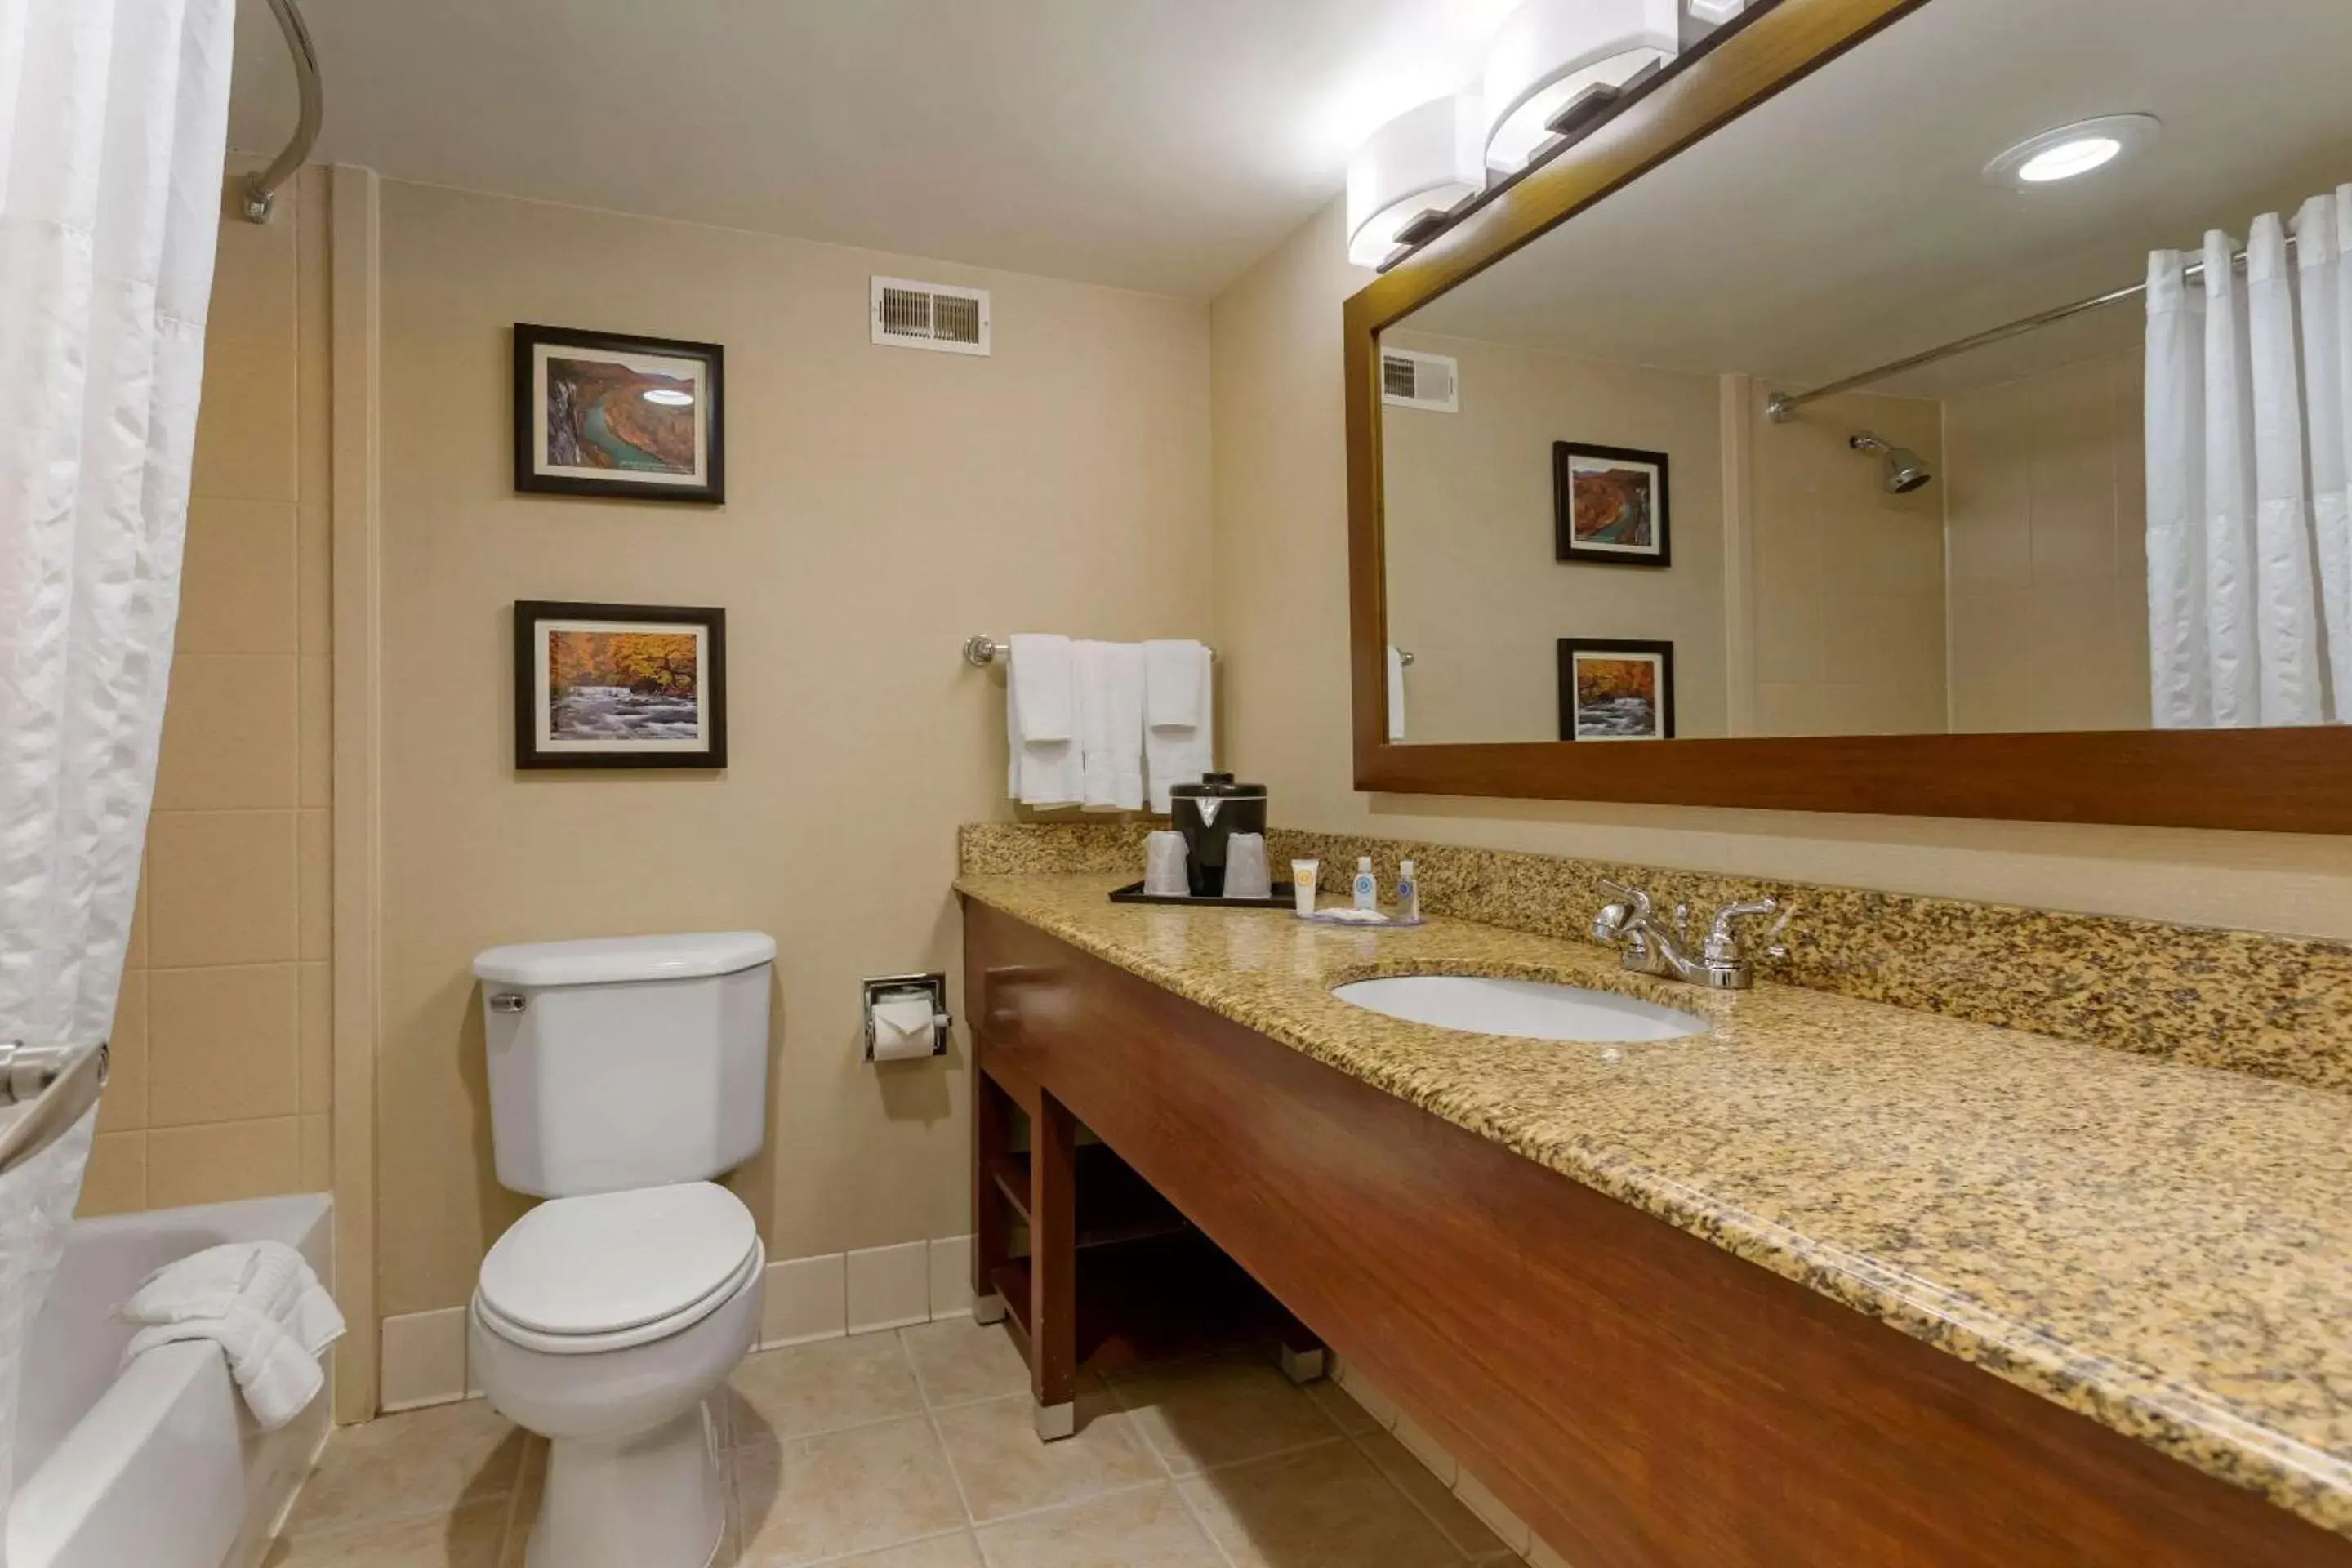 Bedroom, Bathroom in Comfort Inn & Suites Presidential